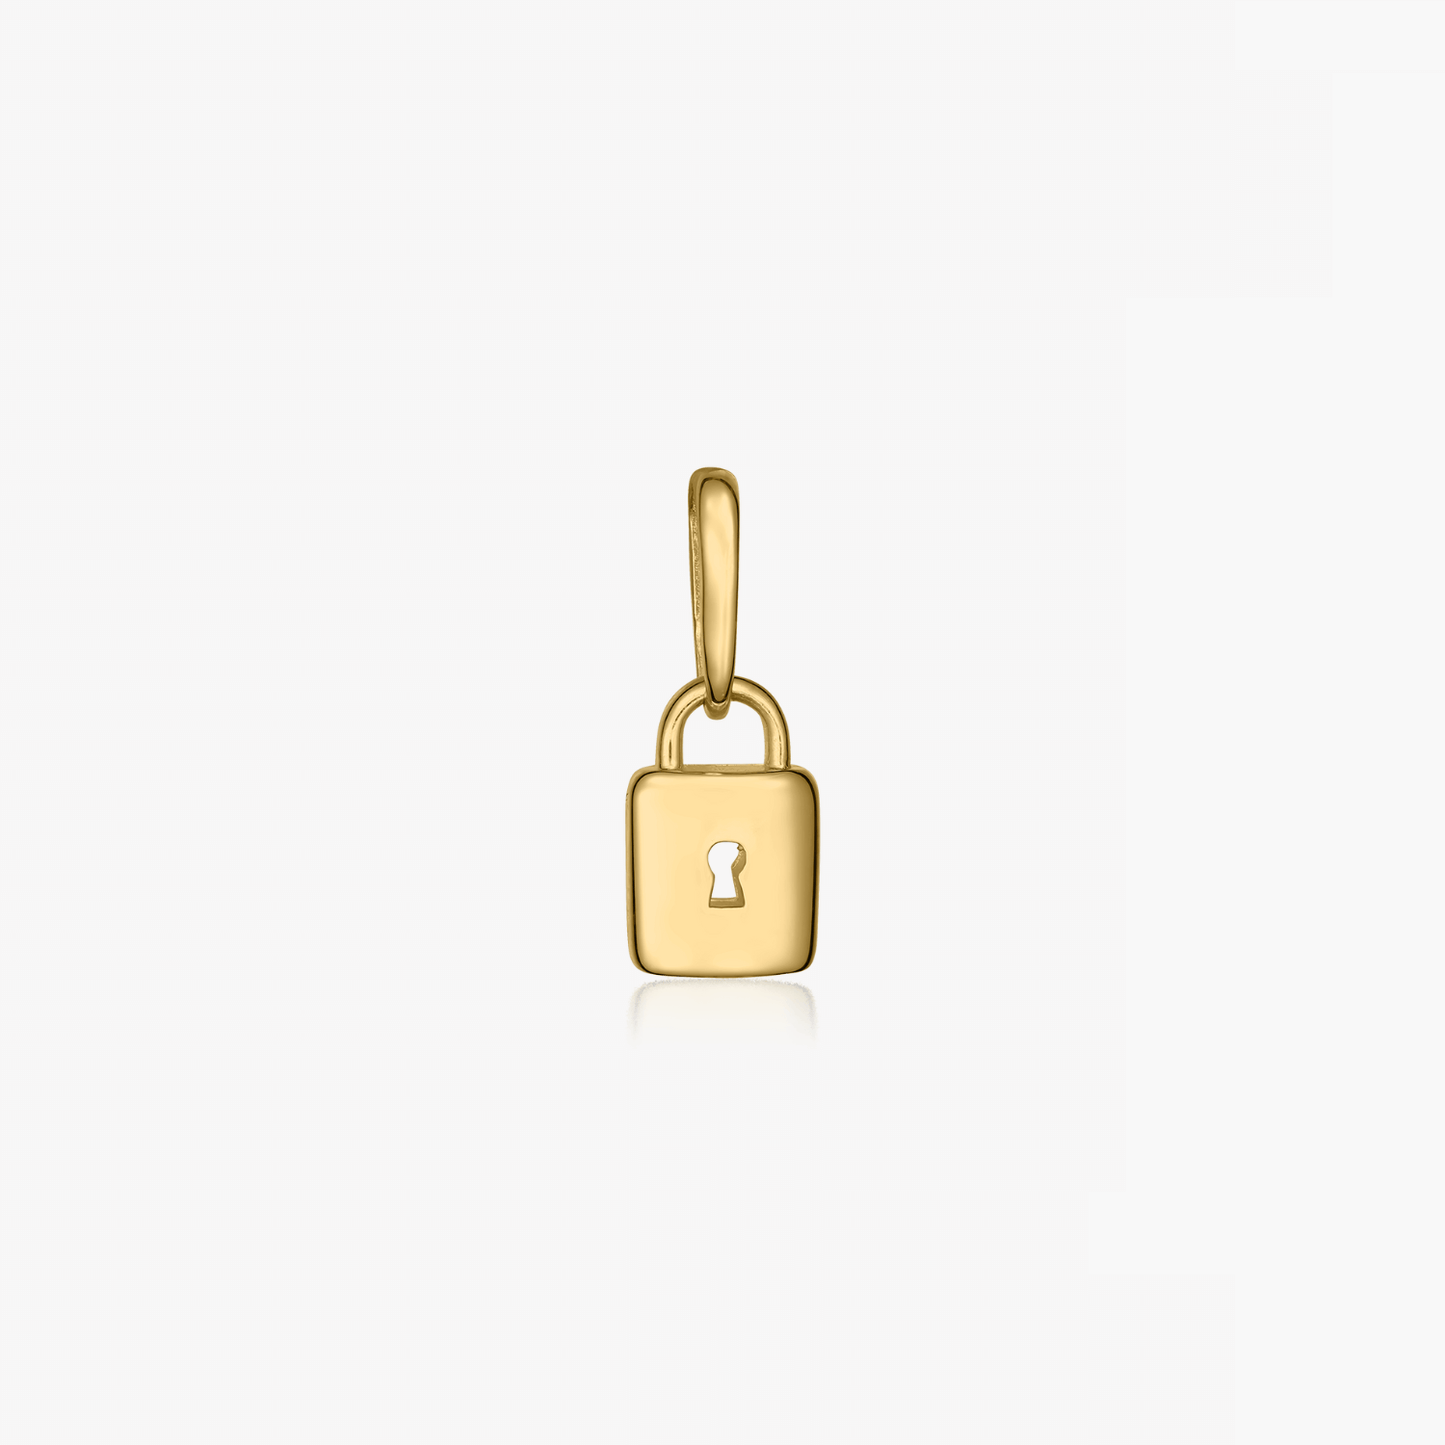 Secret gold pendant